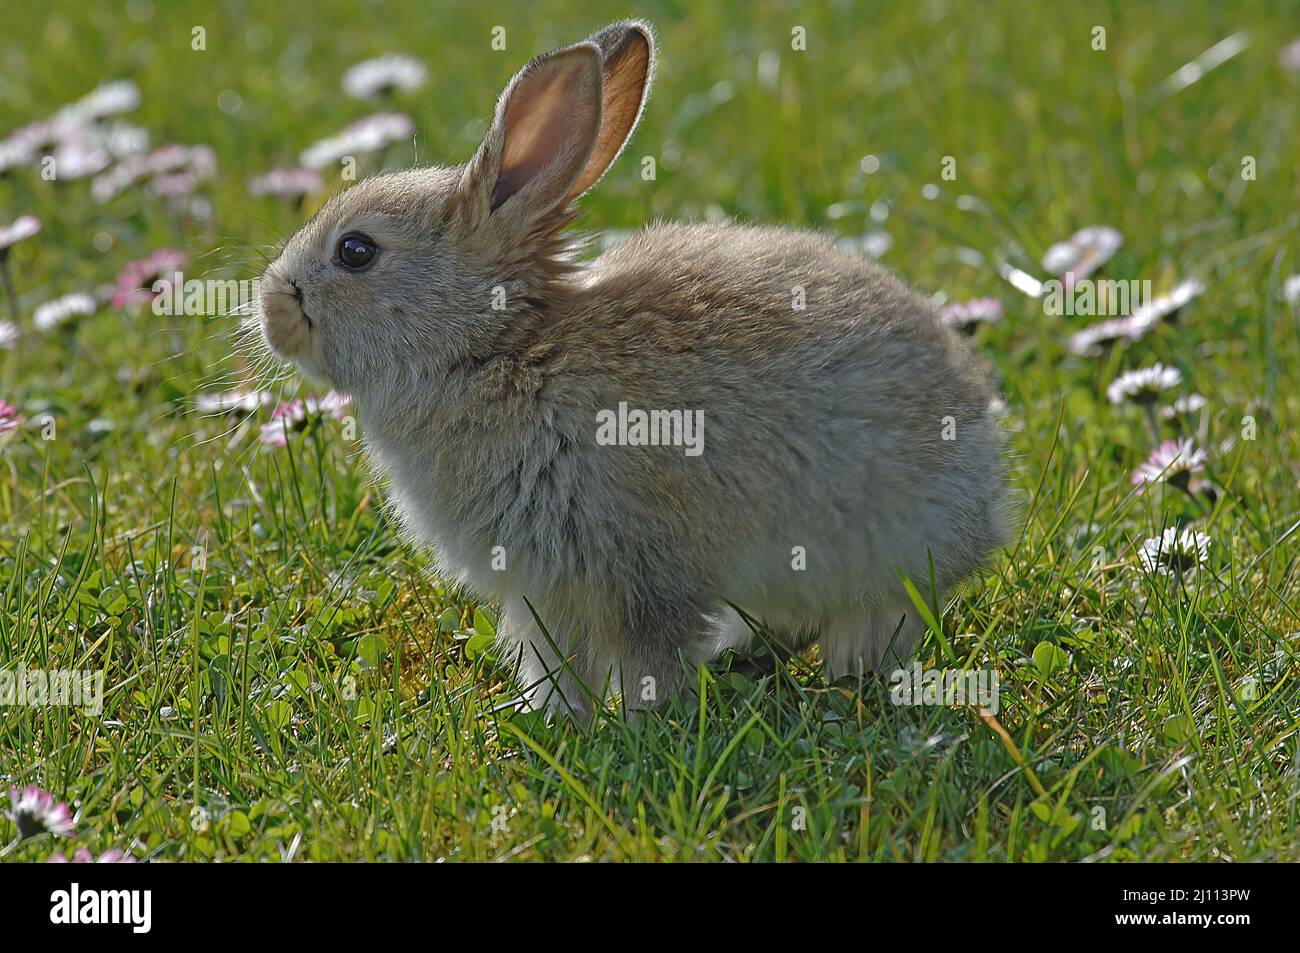 Hase, junger Hase auf einer Frühlingswiese, Häschen Foto Stock